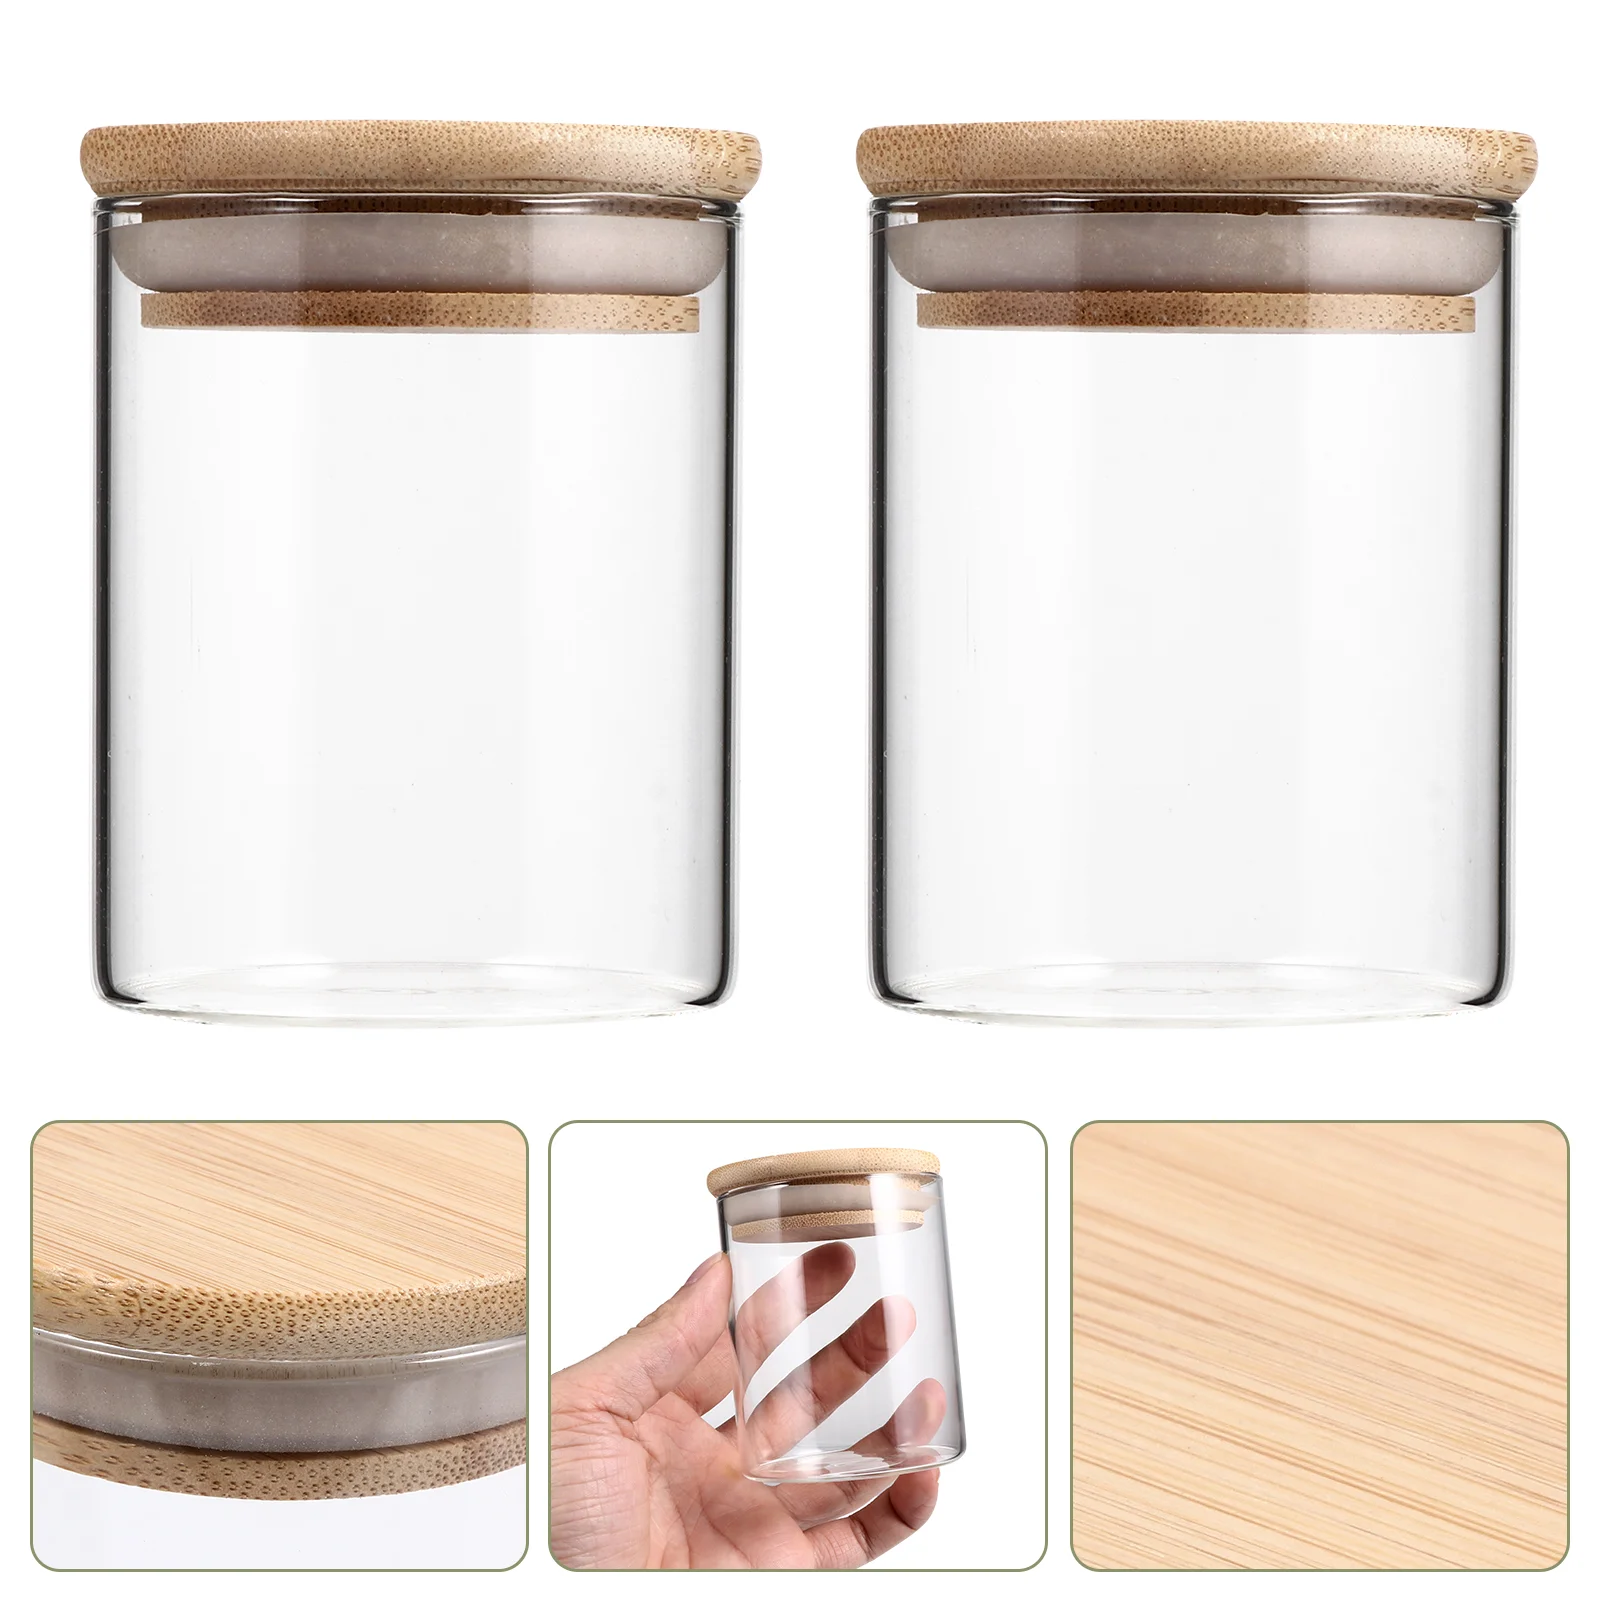 Чайники для хранения стеклянные Ёмкости для специй Банки для консервирования Контейнер для хранения Разбросанные прозрачные контейнеры Контейнер для муки Соль Герметичный сахар, запечатанный.